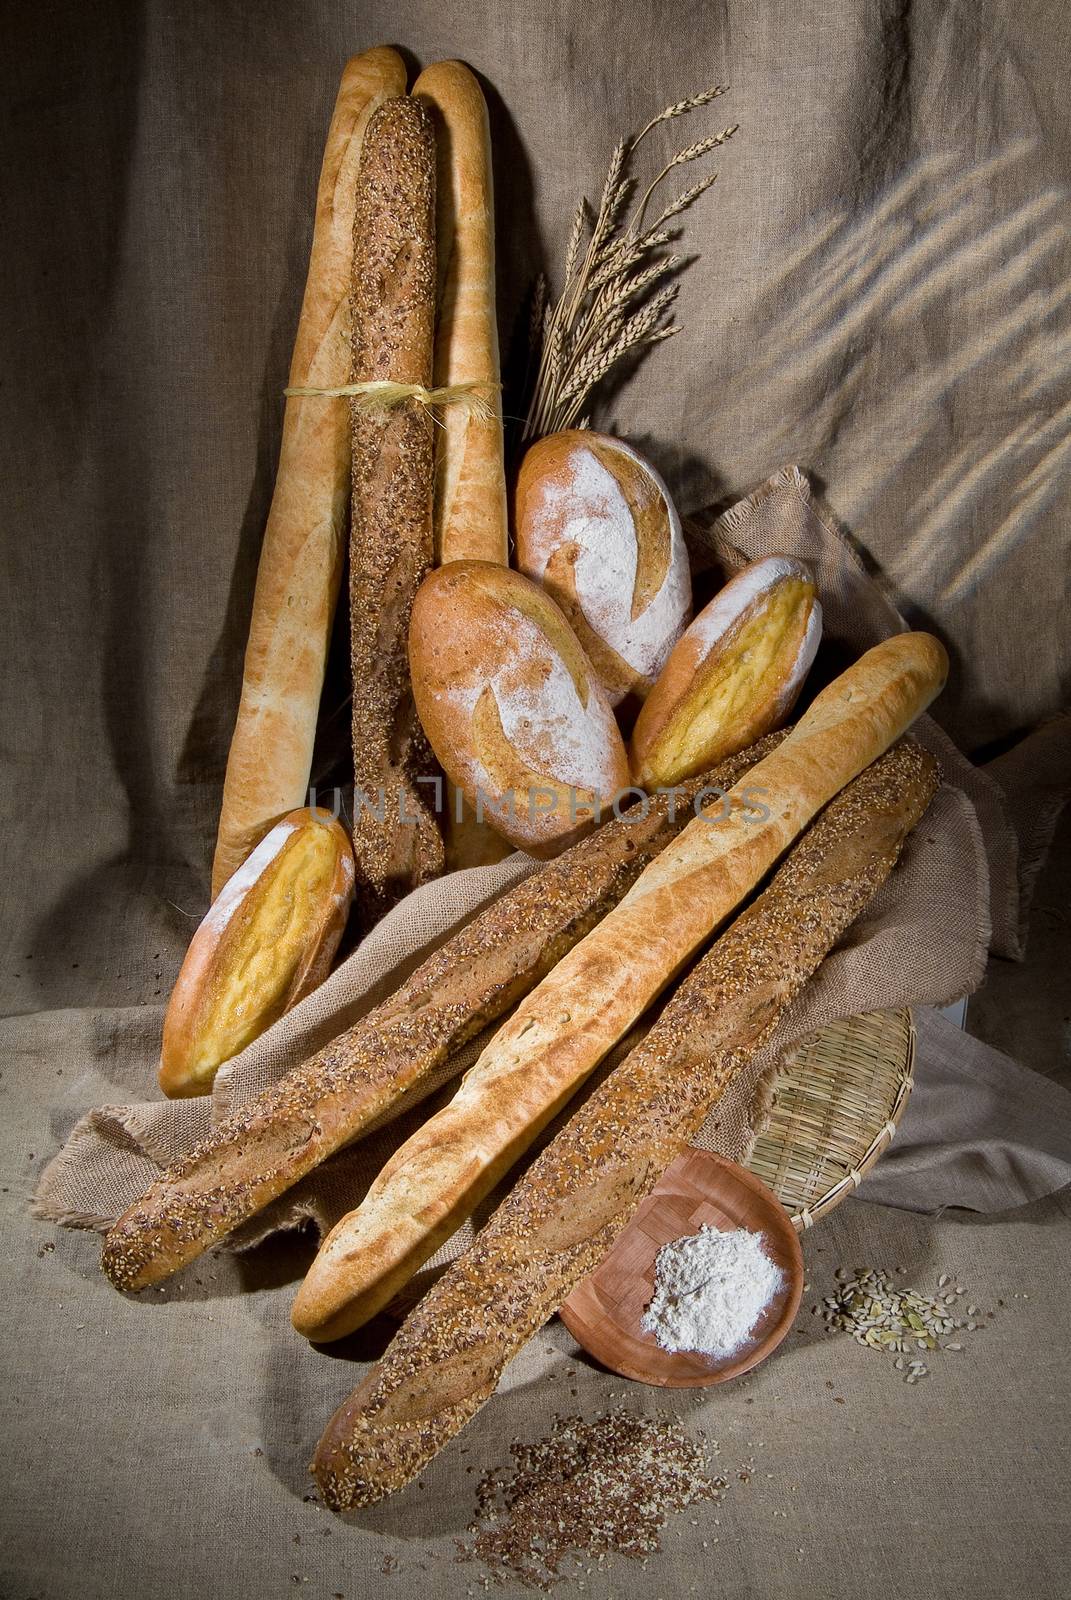 Still Life With Bread by Fotoskat